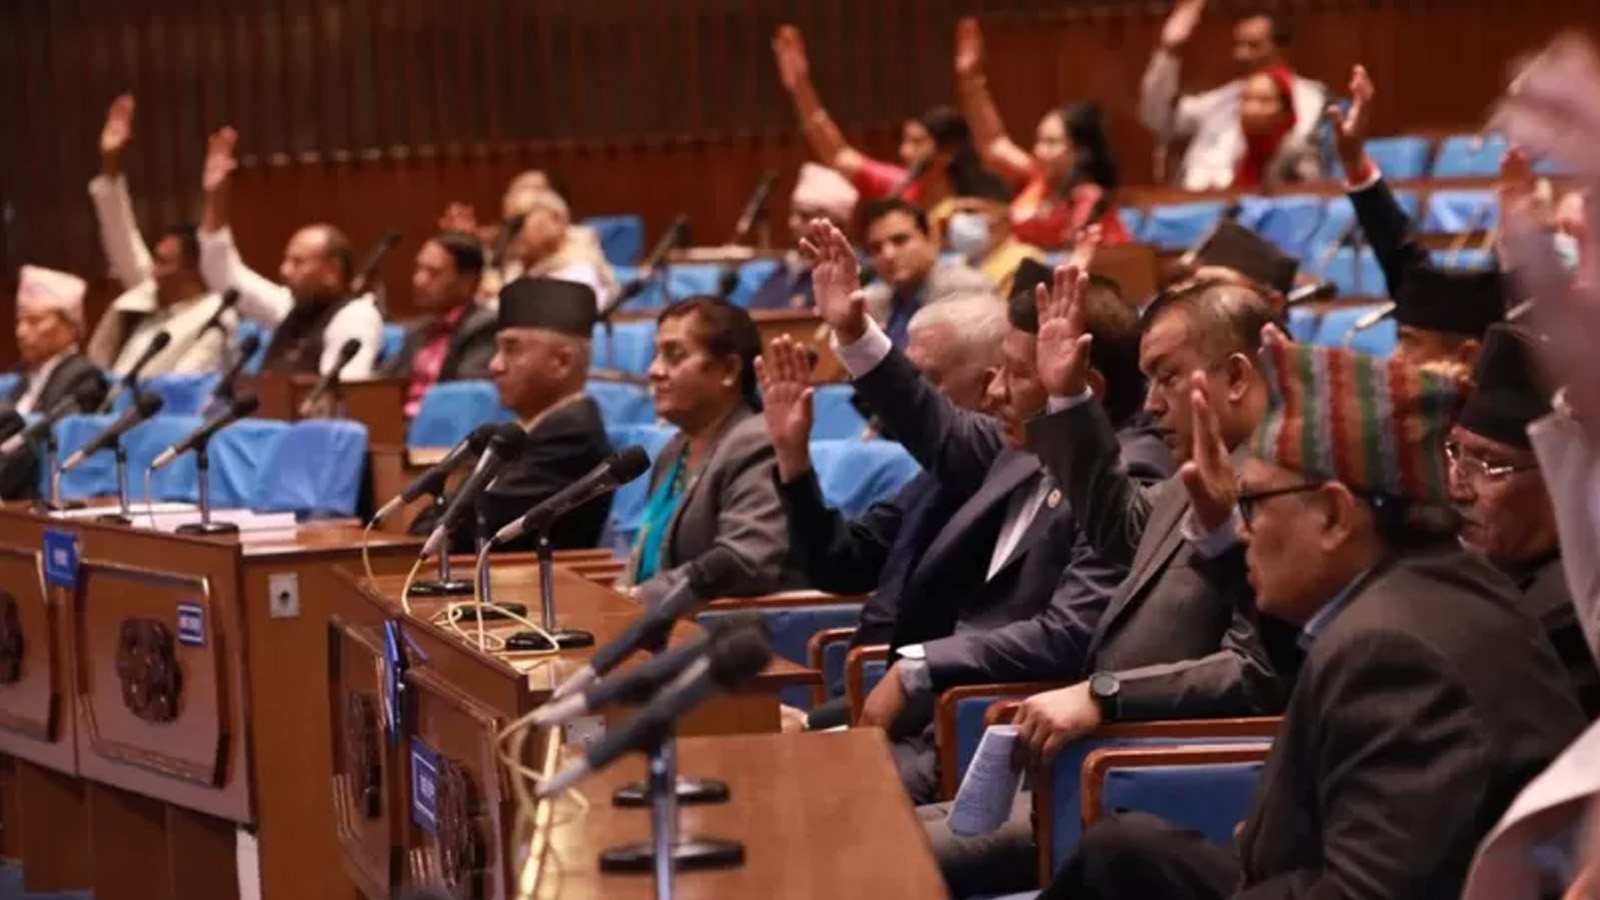 नागरिकता विधेयक प्रतिनिधि सभाबाट हुवहु भोली नै पारित गर्ने तयारी